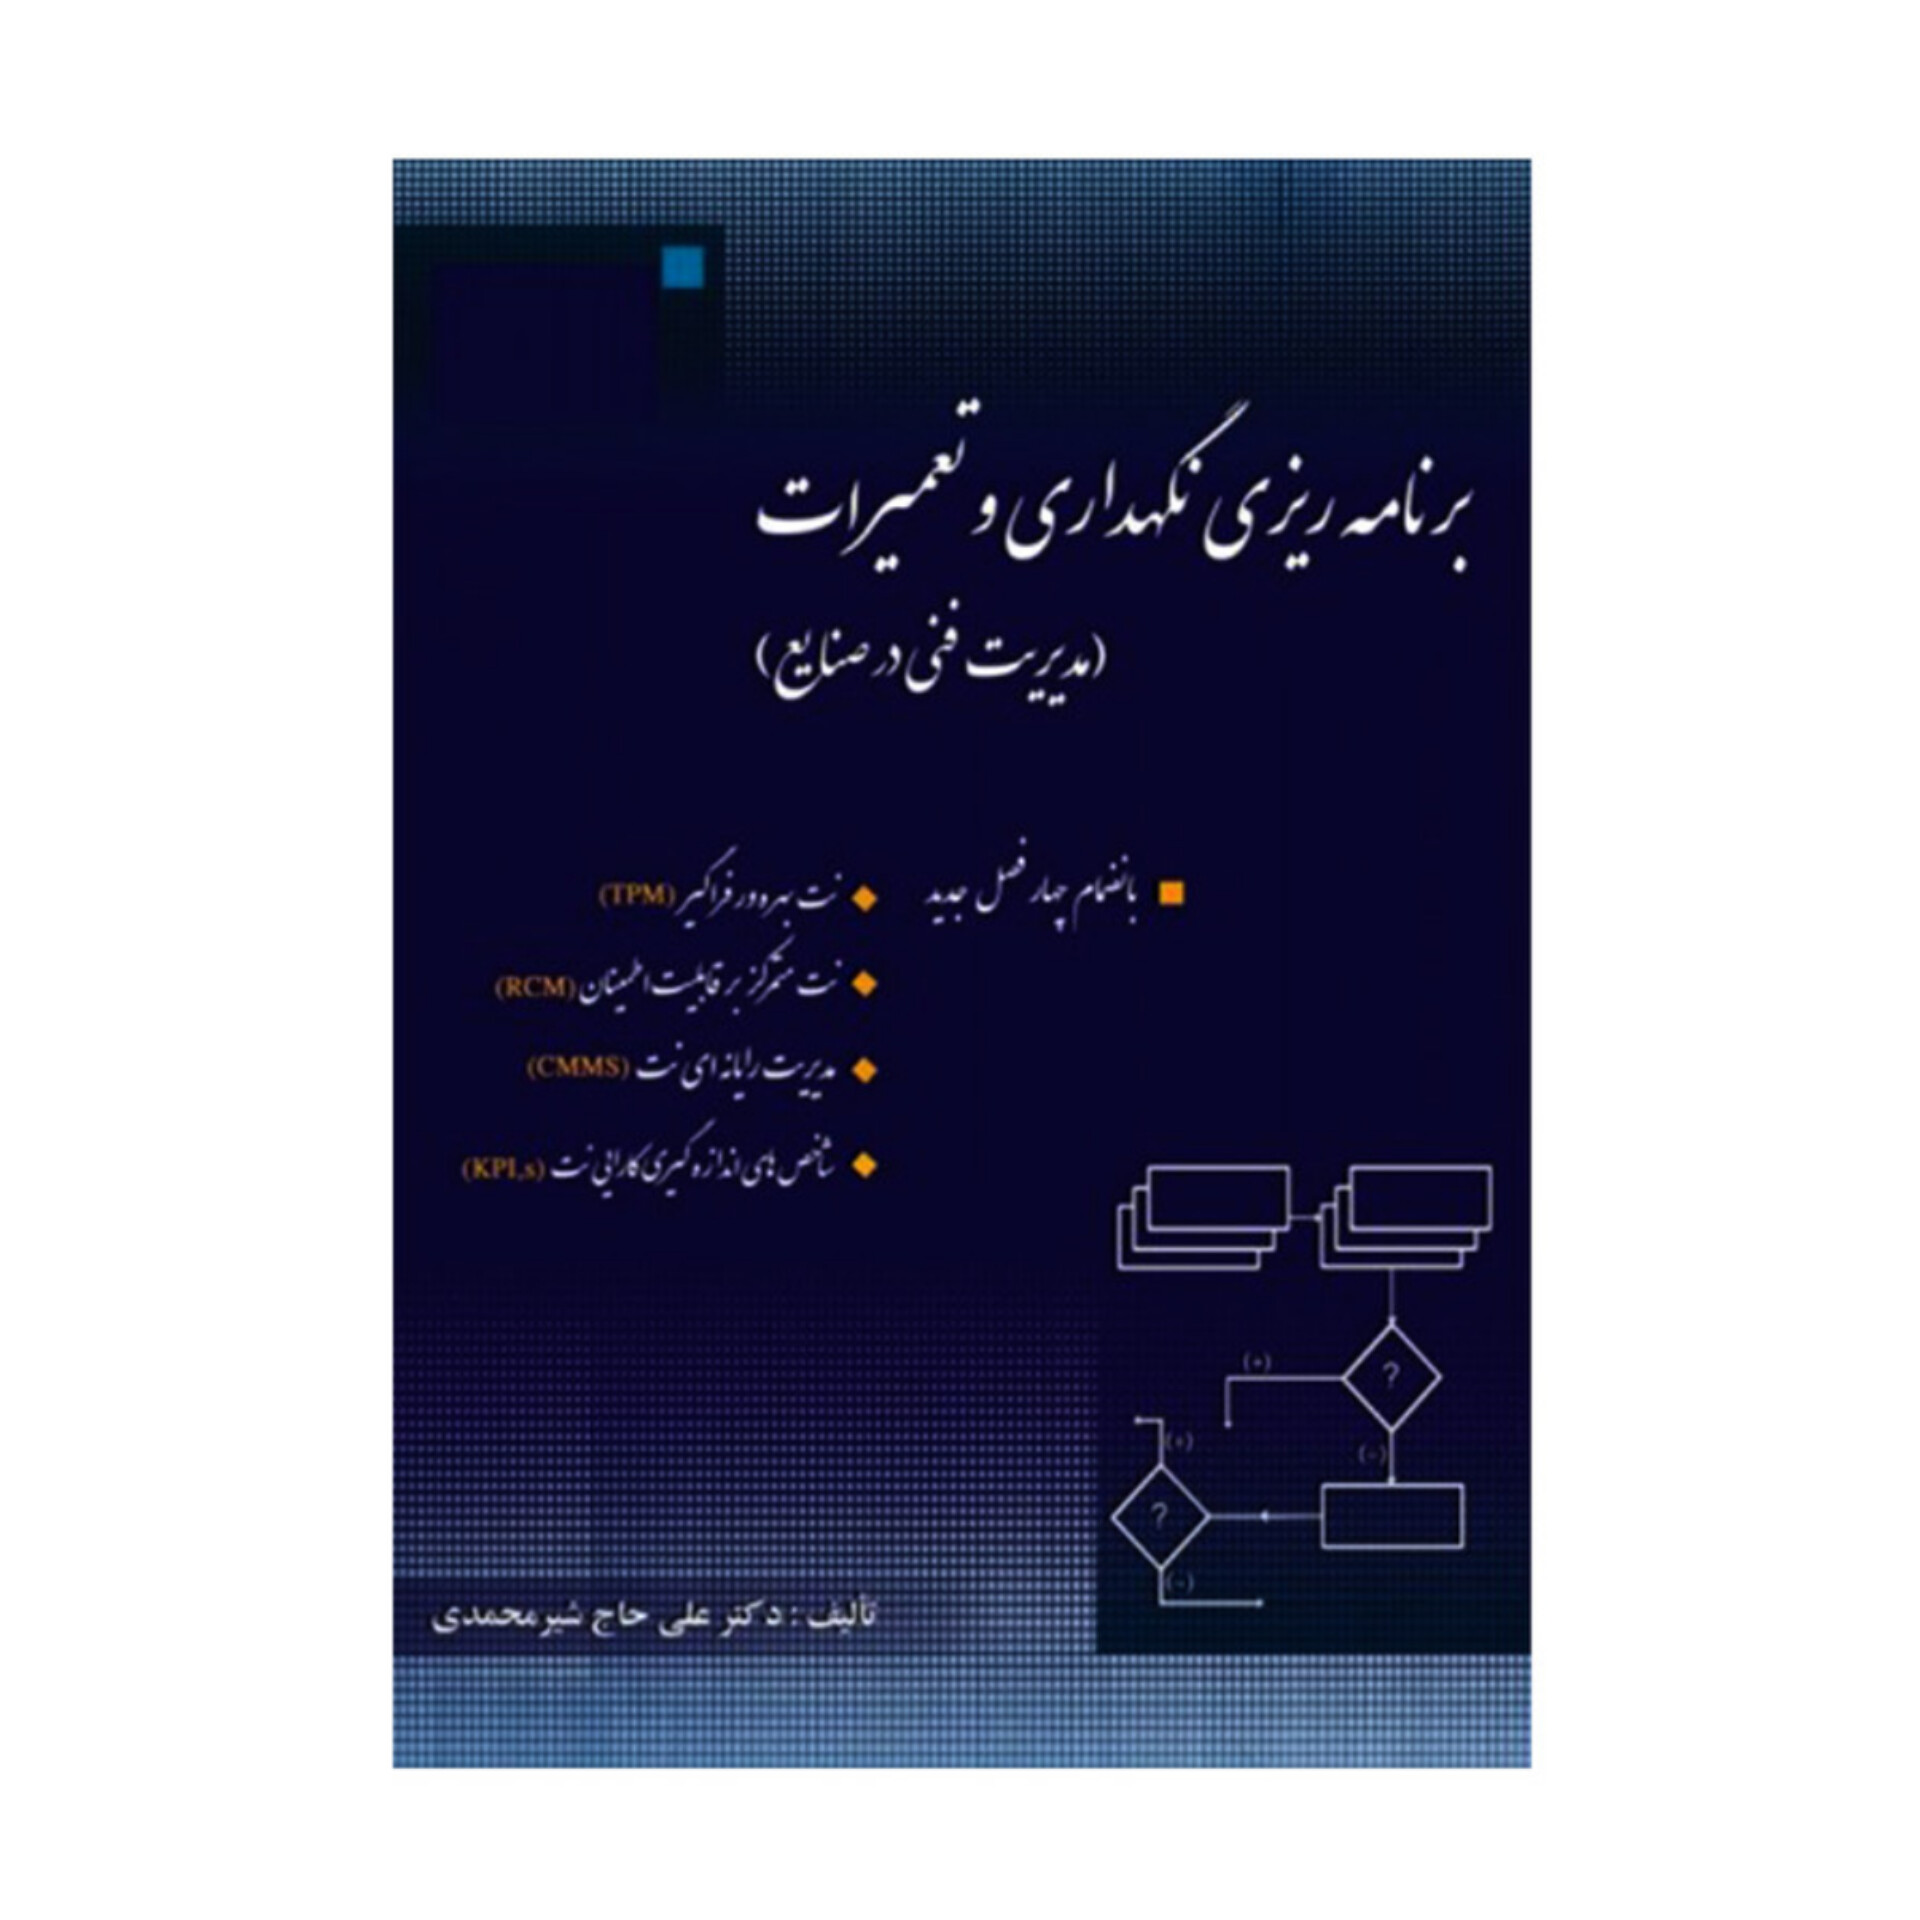 کتاب برنامه ریزی نگهداری و تعمیرات (مدیریت فنی در صنایع)